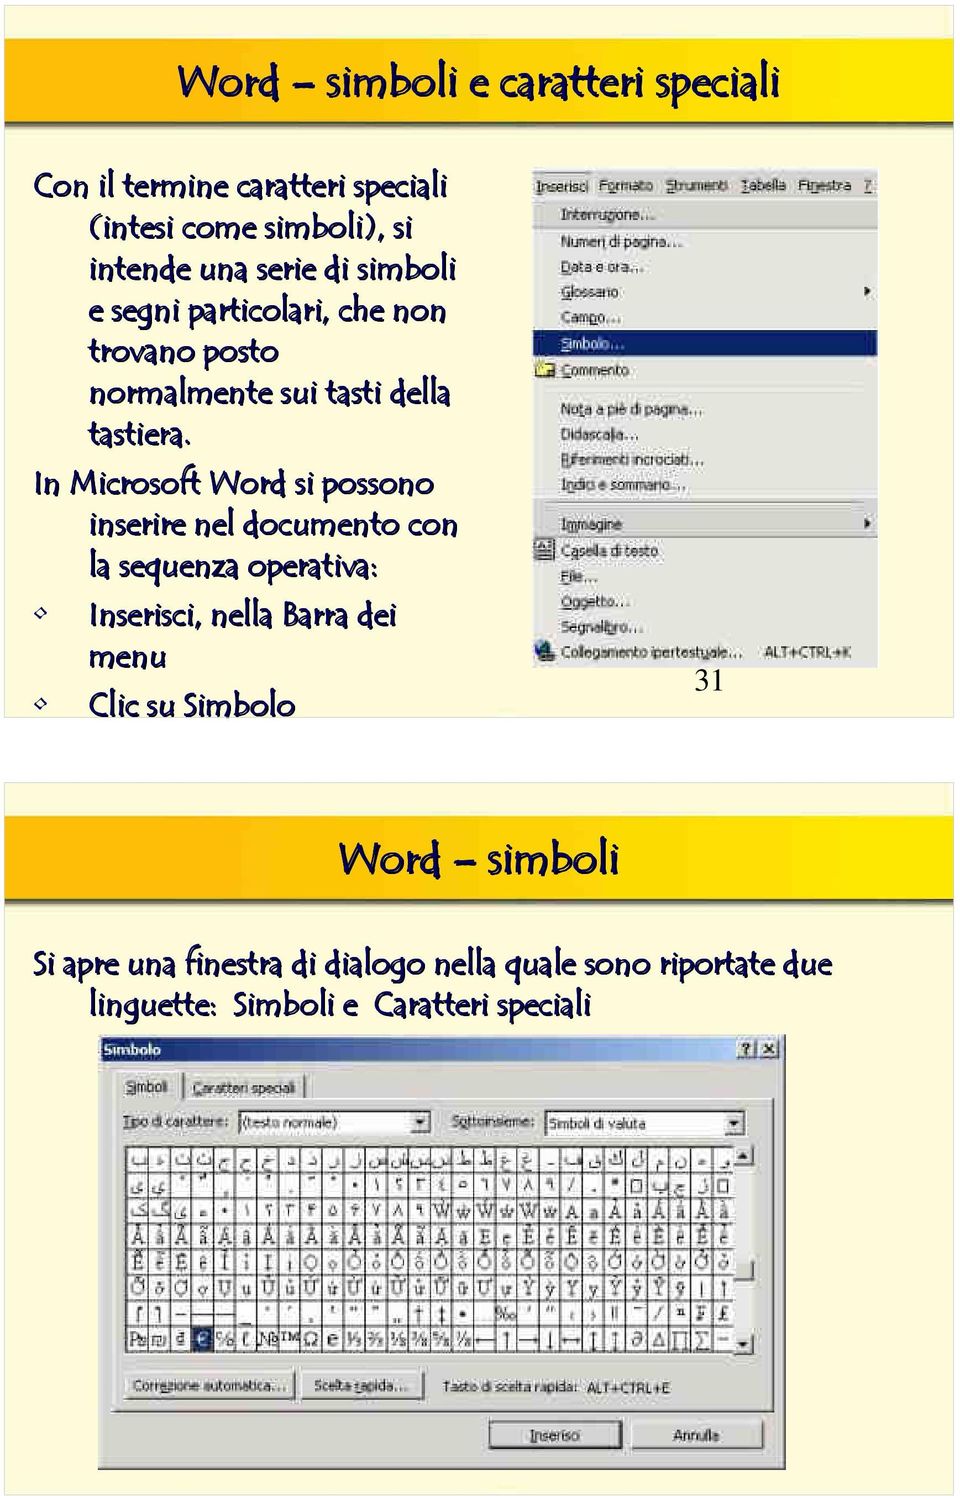 In Microsoft Word si possono inserire nel documento con la sequenza operativa: Inserisci, nella Barra dei menu